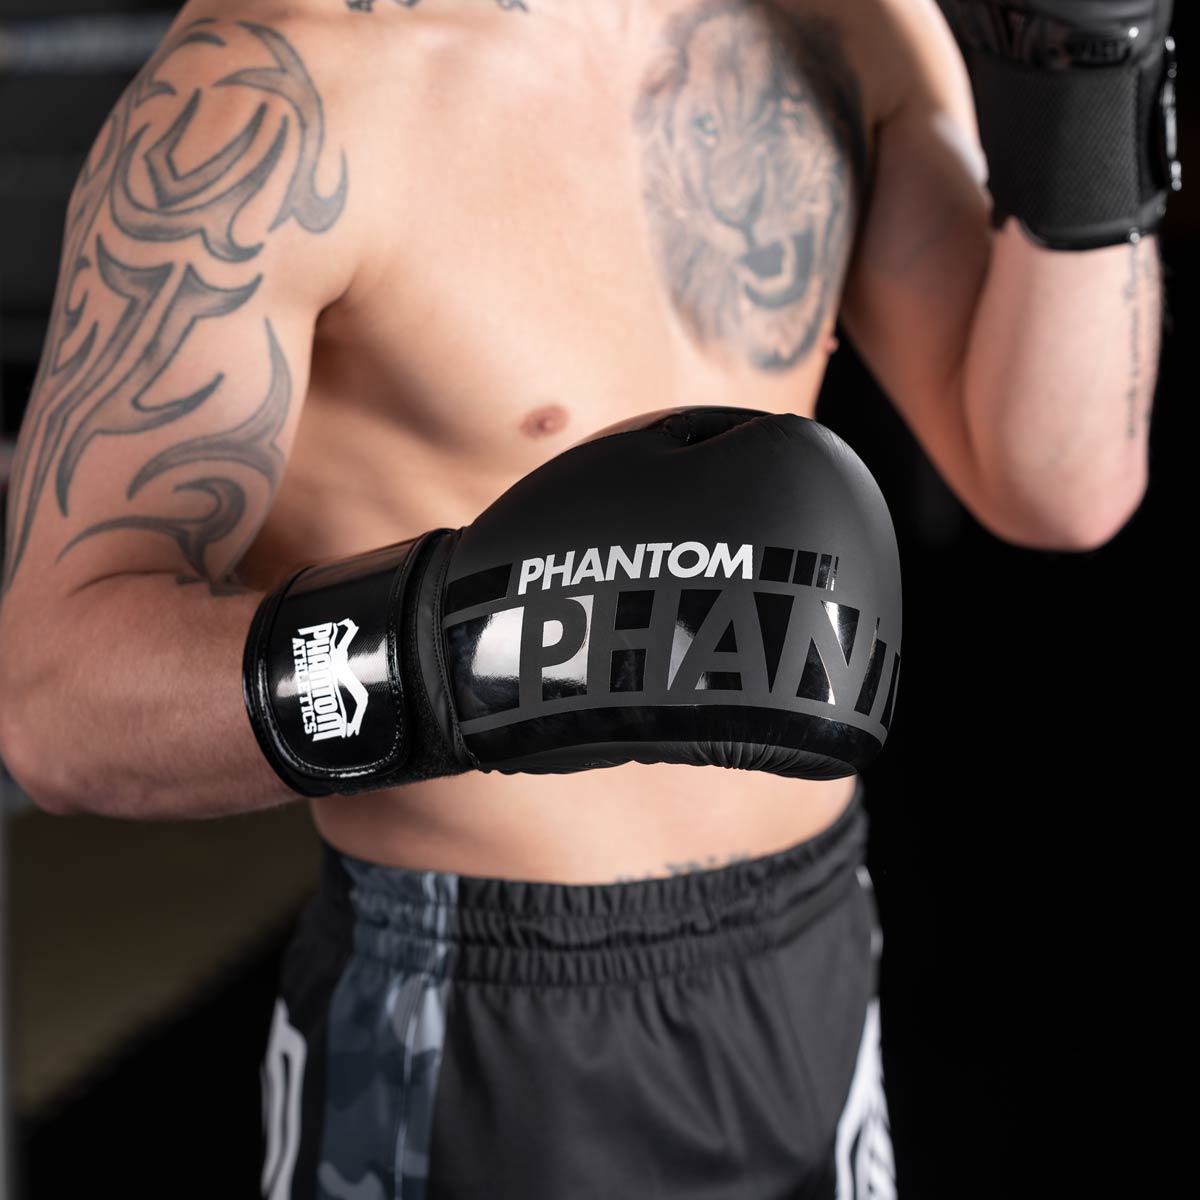 Phantom APEX Speed Boxhandschuhe für Kampfsport Training und Wettkampf. Mit hochqualitativer Polsterung und elastischem Klettverschluss für eine perfekte Handgelenksunterstützung.